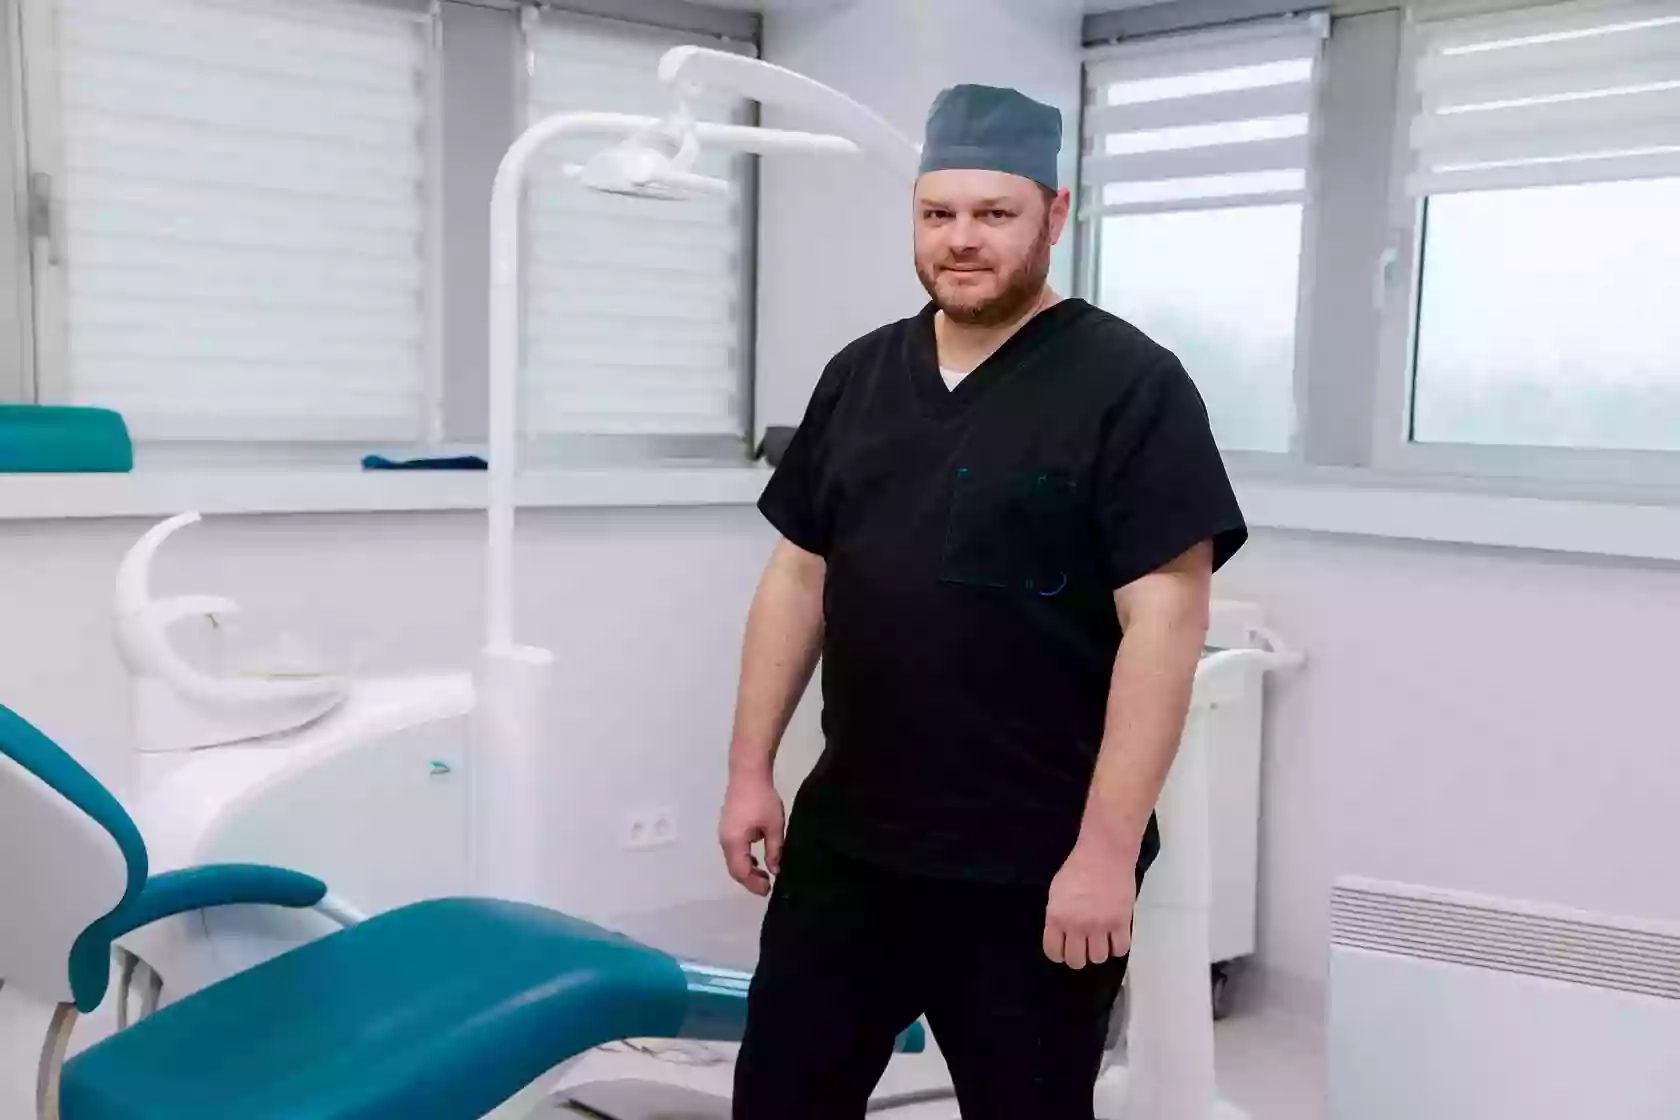 Sirius-Dent. Стоматологическая клиника в Одессе - дентальная имплантация, челюстно-лицевая хирургия, детский стоматолог, ортодонт.